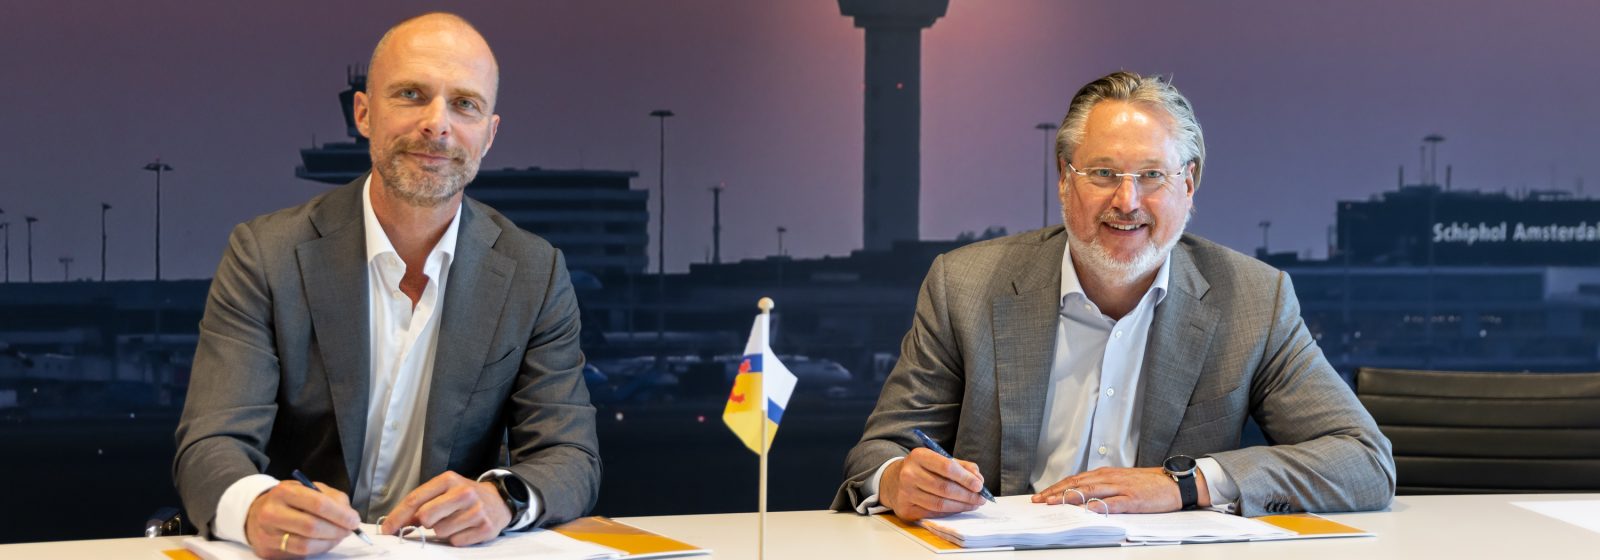 Robert Carsouw, CFO Schiphol, en Stephan Satijn, gedeputeerde economie Provincie Limburg